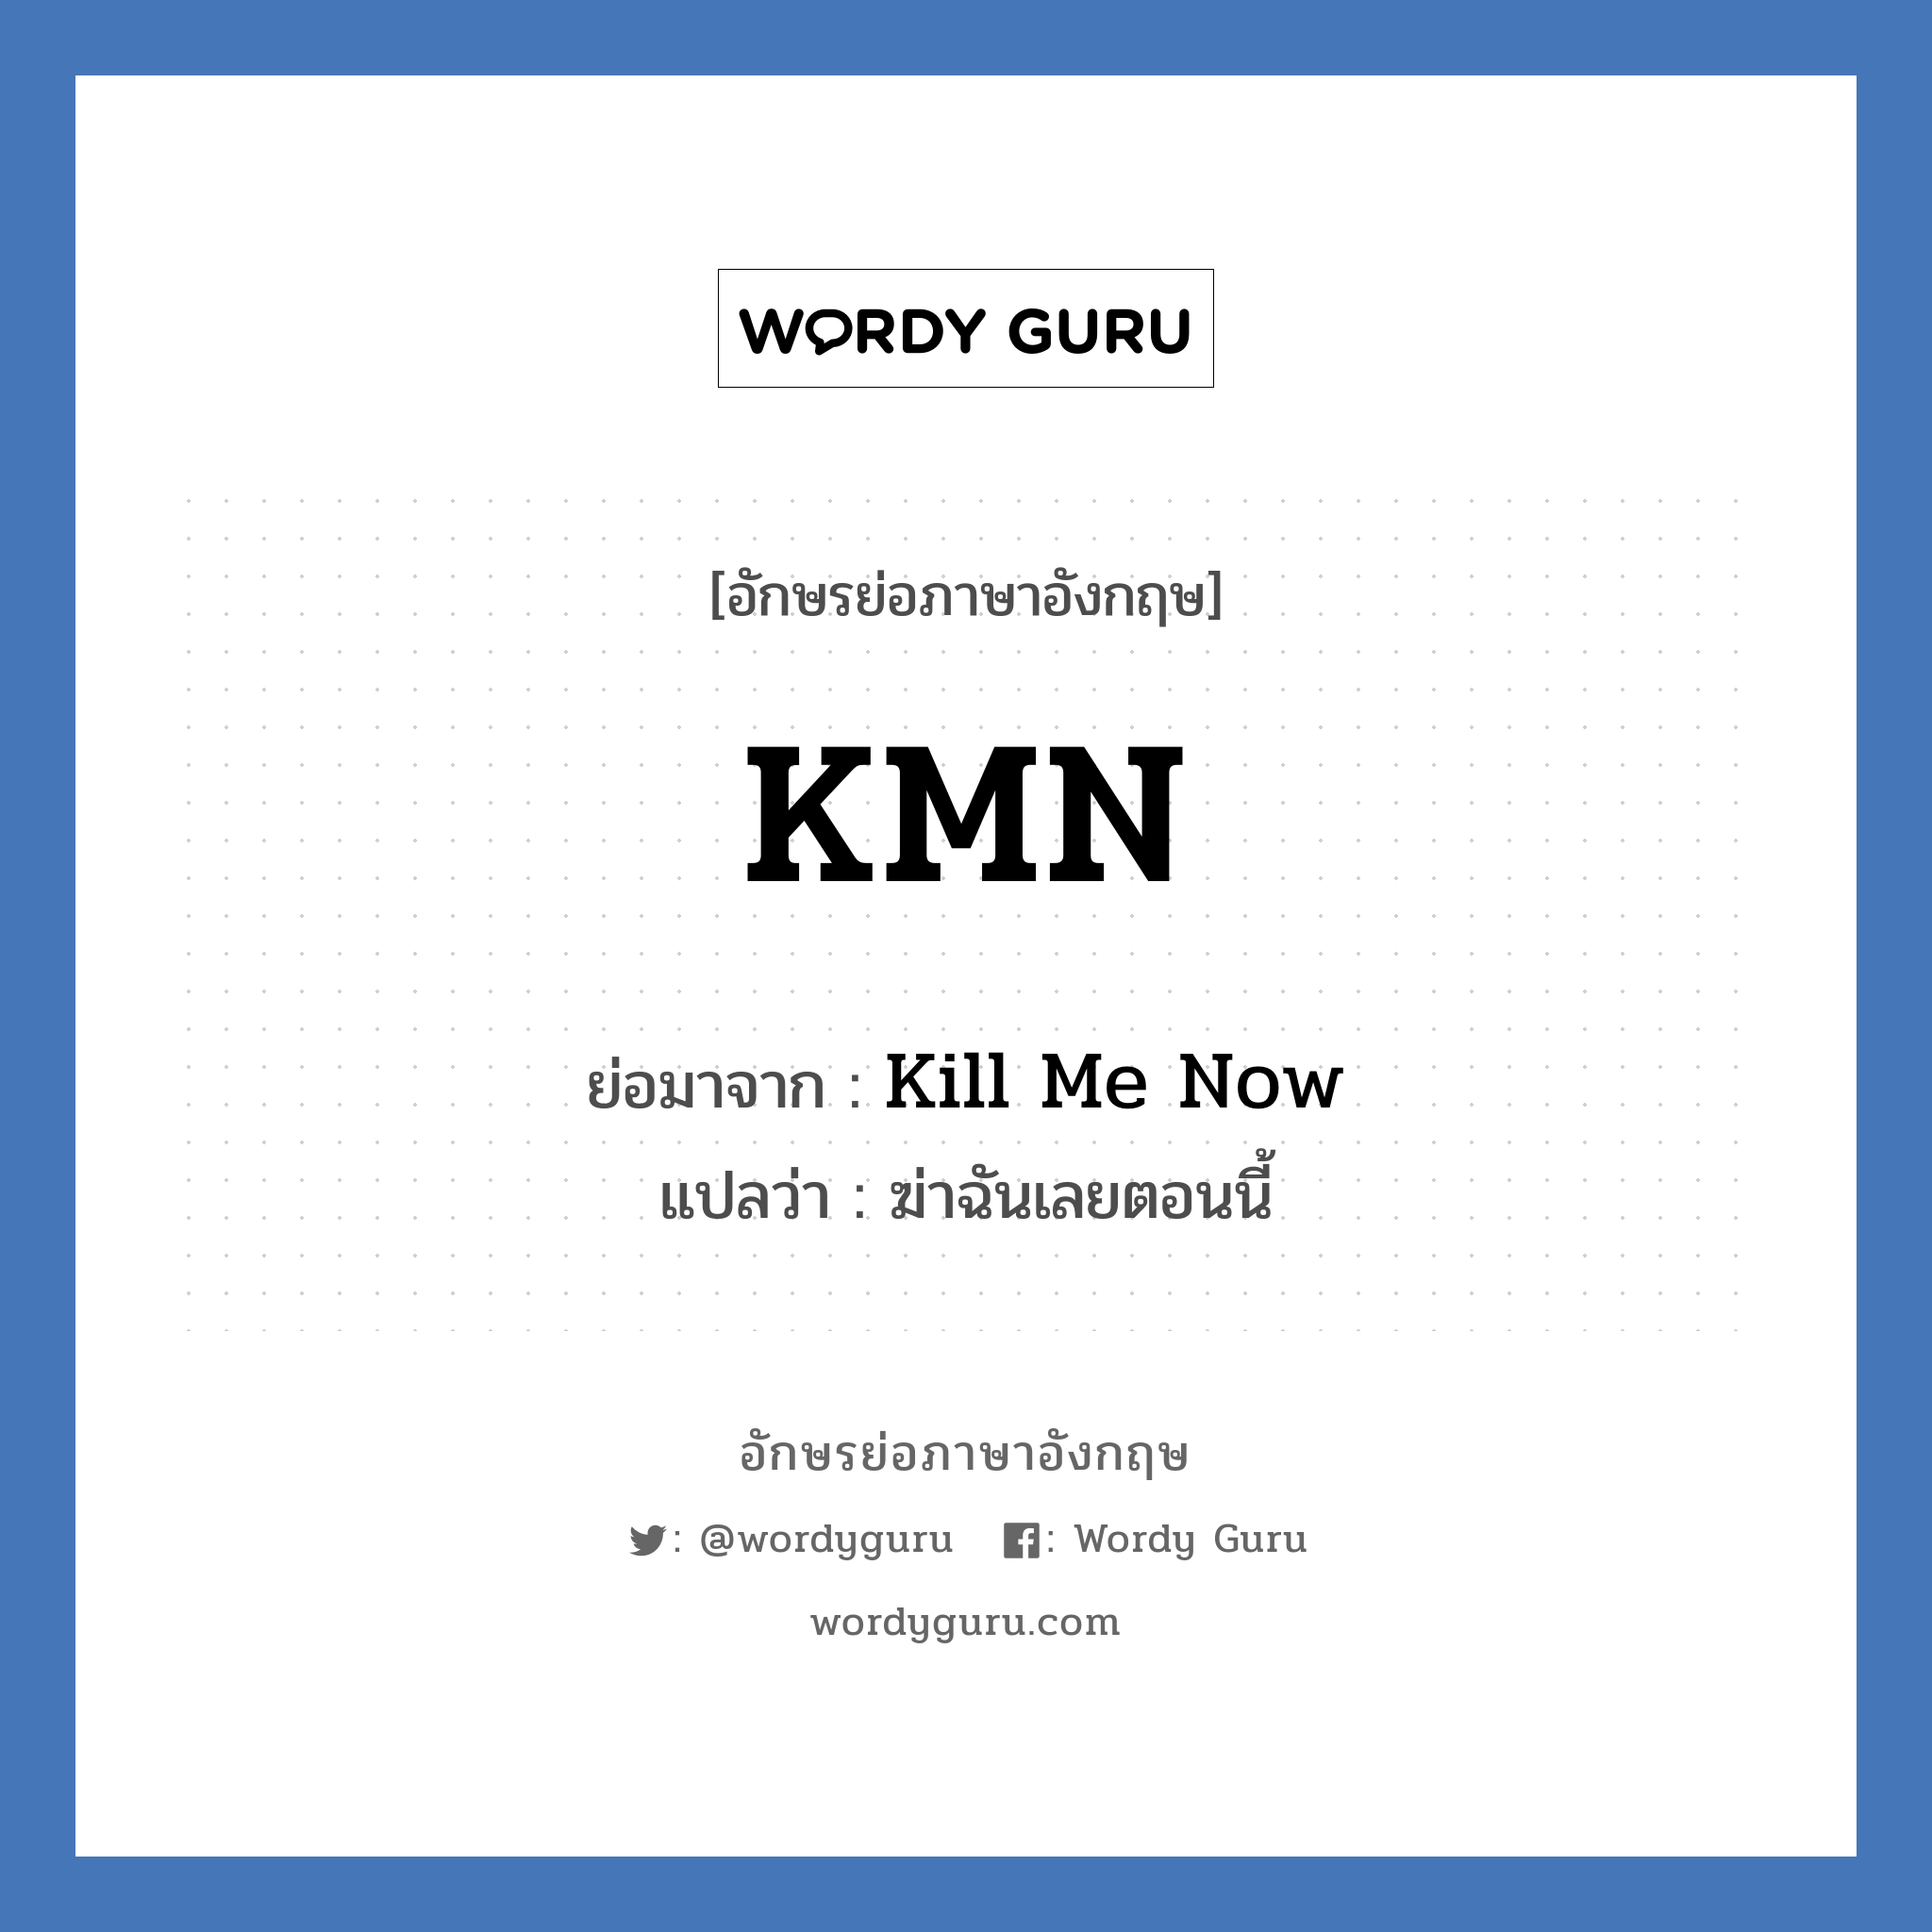 Kill Me Now คำย่อคือ? แปลว่า?, อักษรย่อภาษาอังกฤษ Kill Me Now ย่อมาจาก KMN แปลว่า ฆ่าฉันเลยตอนนี้